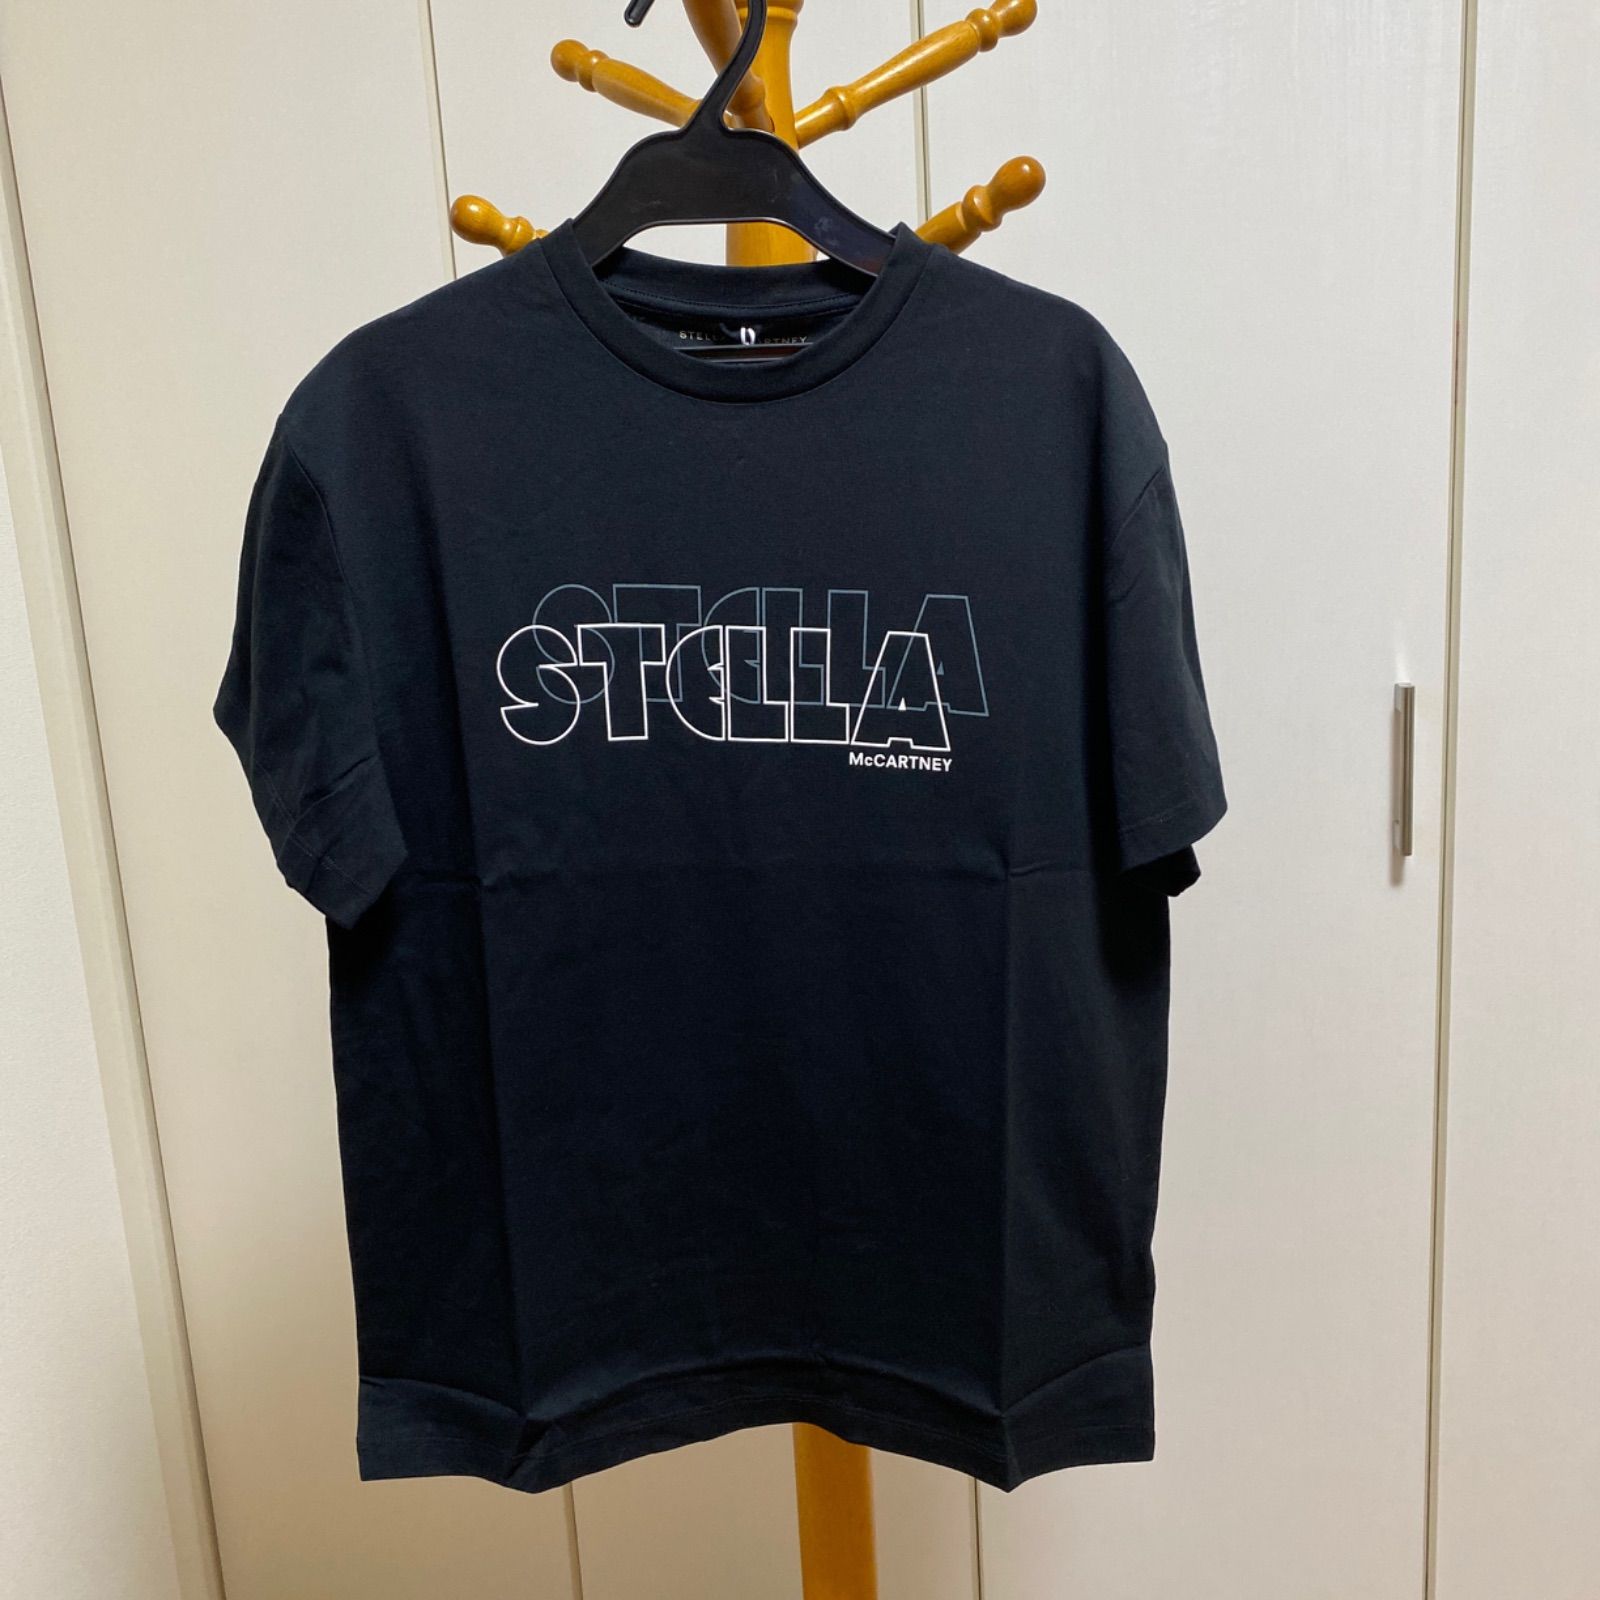 新品未使用！送料込み Stella McCartney T-shirt 大阪店激安通販 レディース